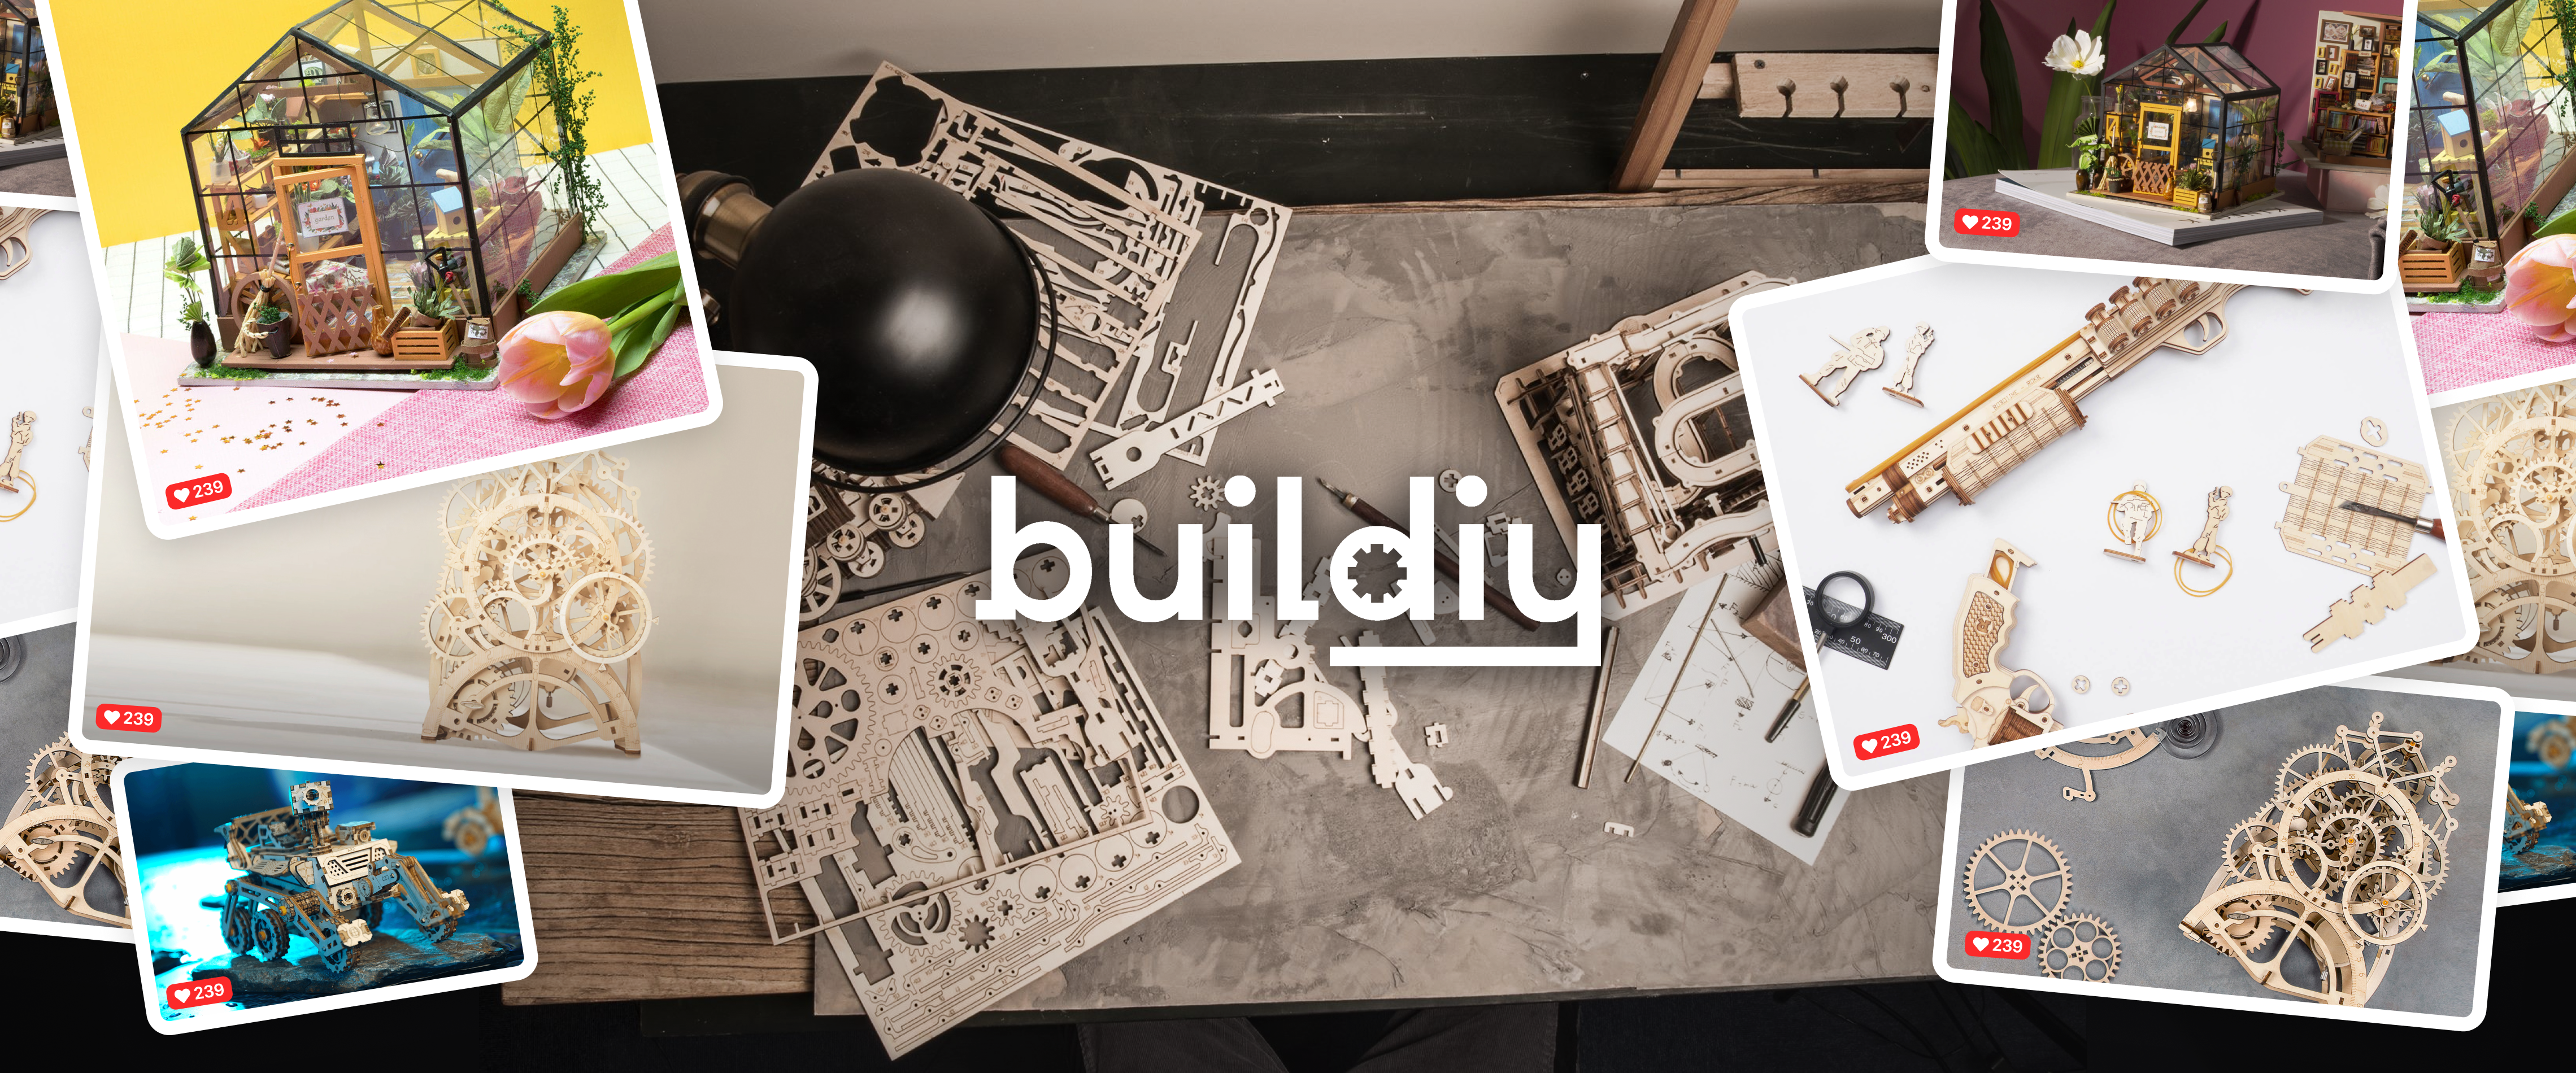 (c) Buildiy.de